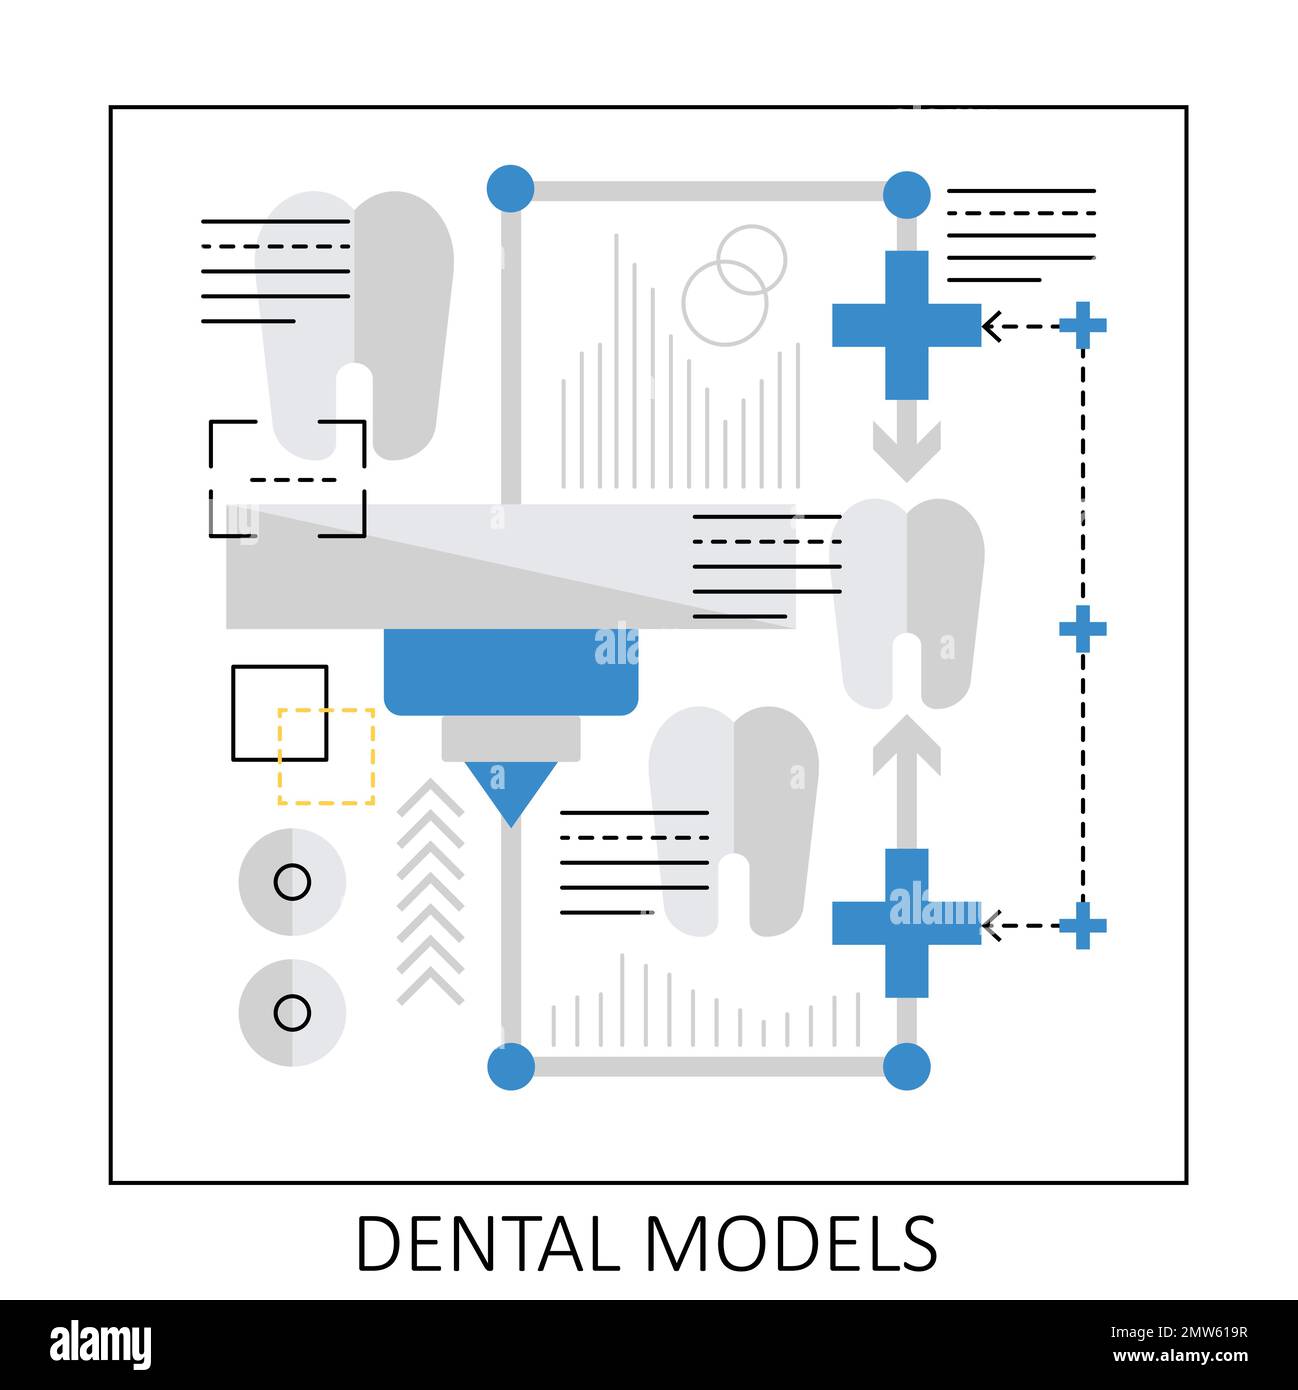 3d impression de modèles dentaires. Modélisation des dents virtuelles, illustration du vecteur de rendu de la dent 3D Illustration de Vecteur